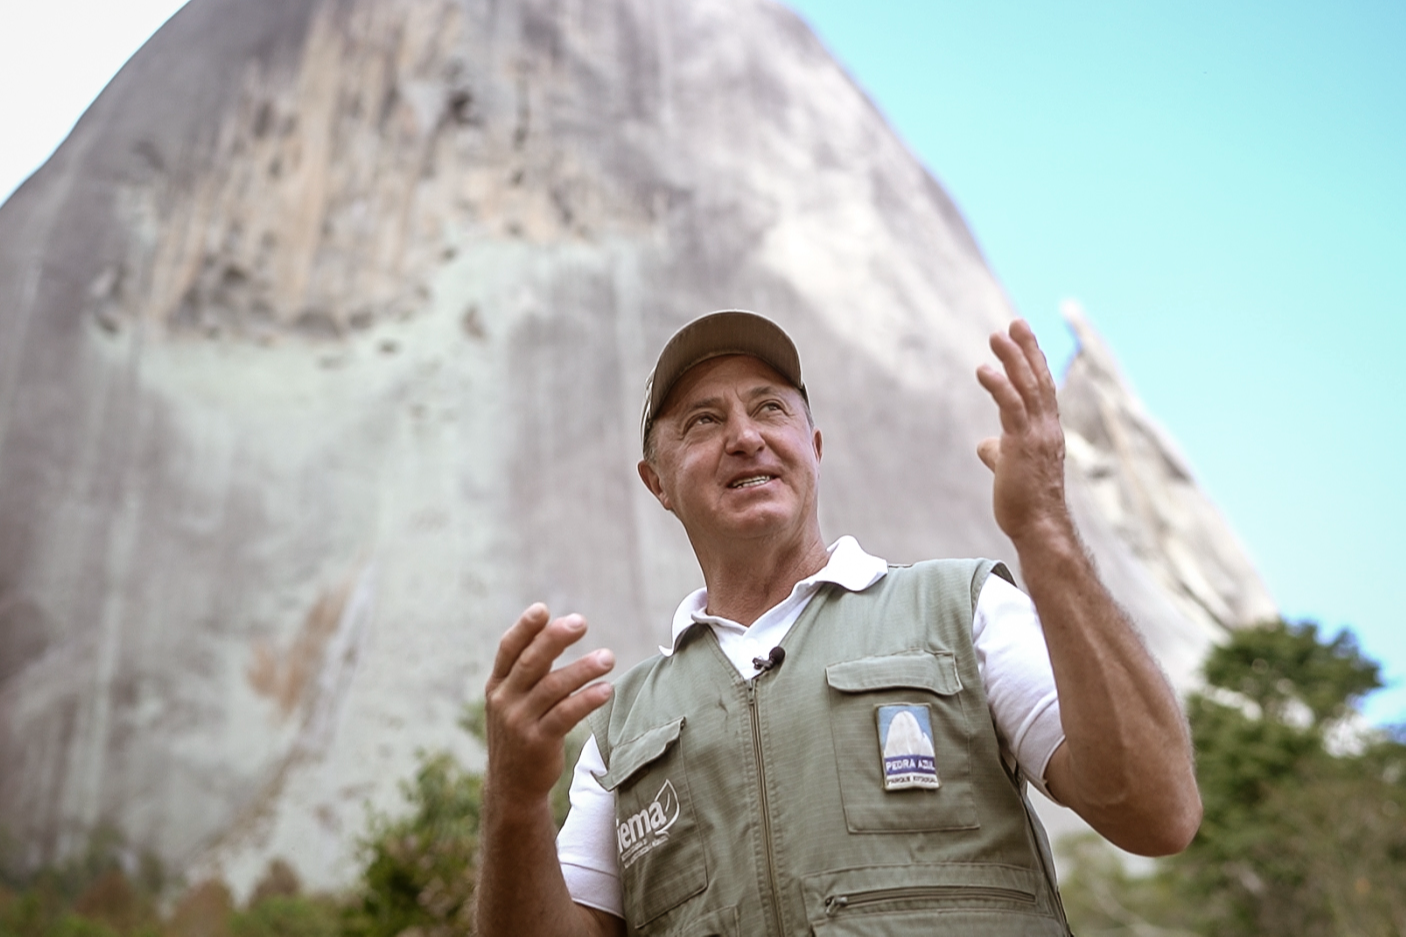 José Bellon, o Guarda Belo, monitor ambiental do Parque Estadual da Pedra Azul, em Domingos Martins